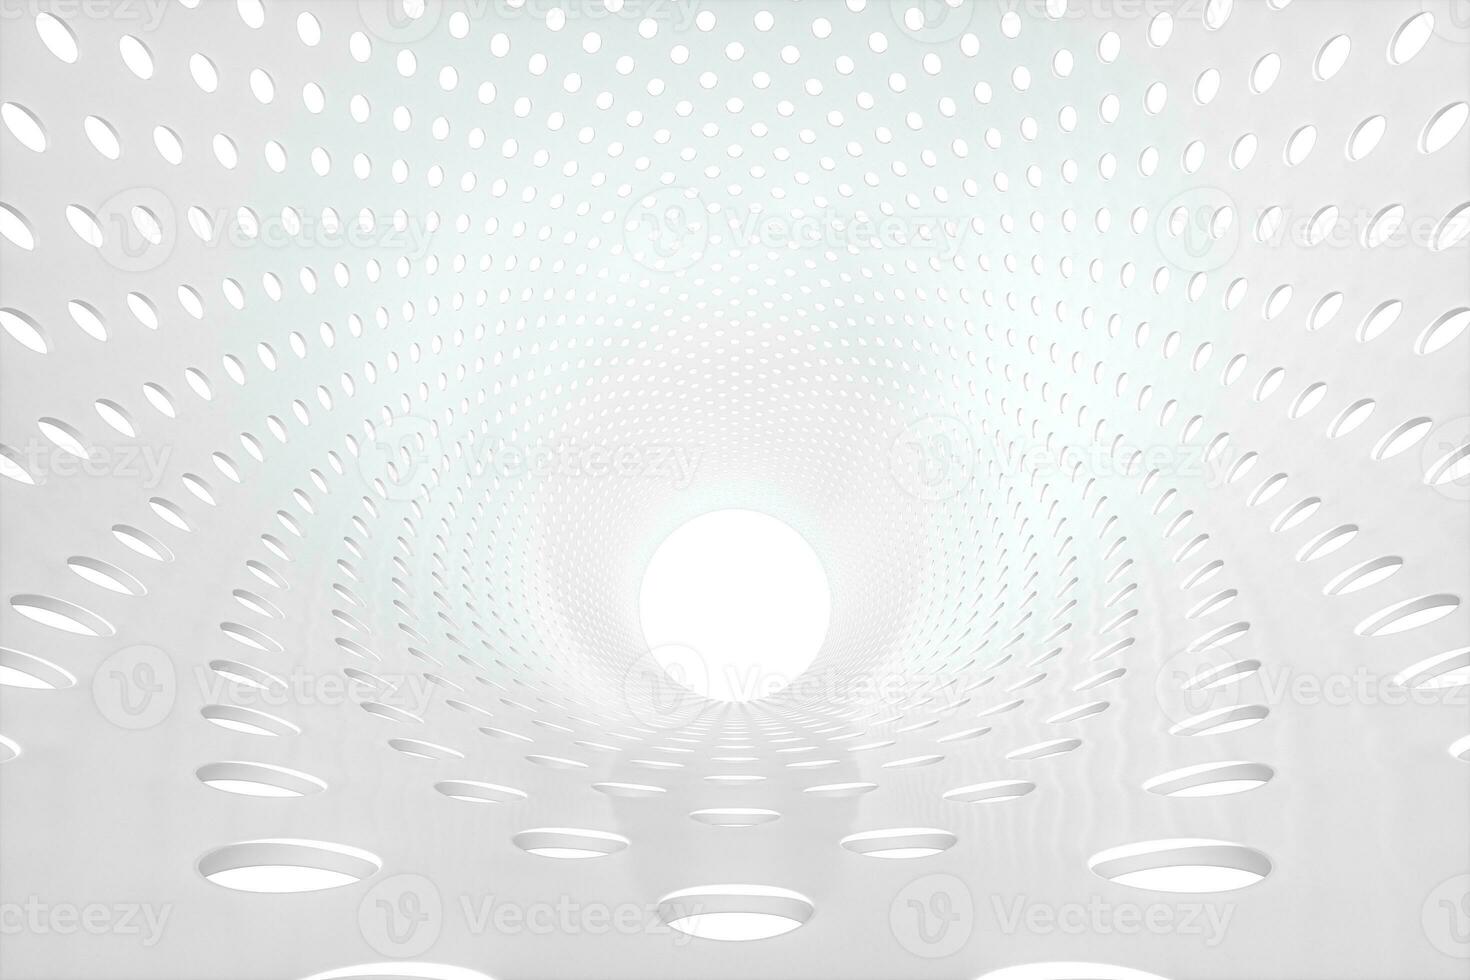 metal circular túnel, moderno arquitectónico concepto, 3d representación. foto